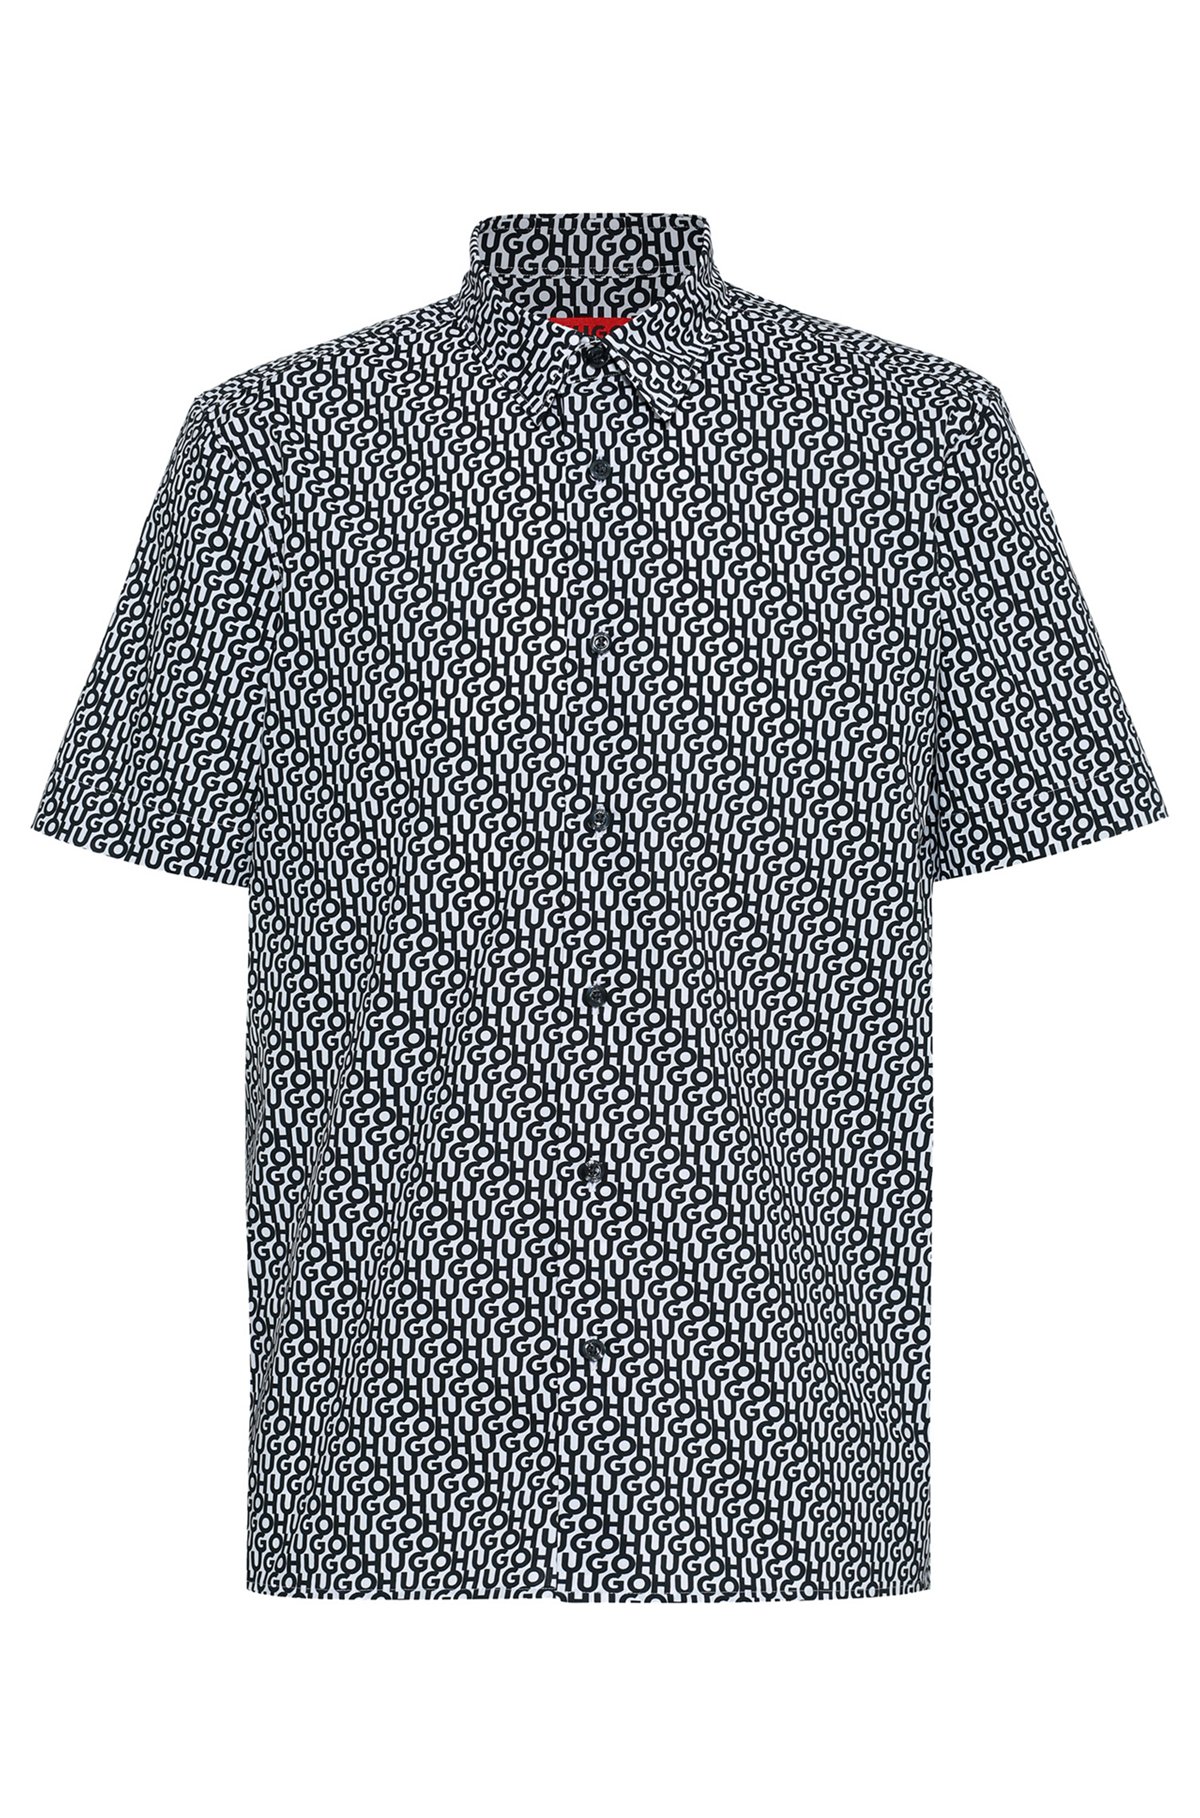 Camicia relaxed fit in cotone manocarta con logo stampato, Blu scuro